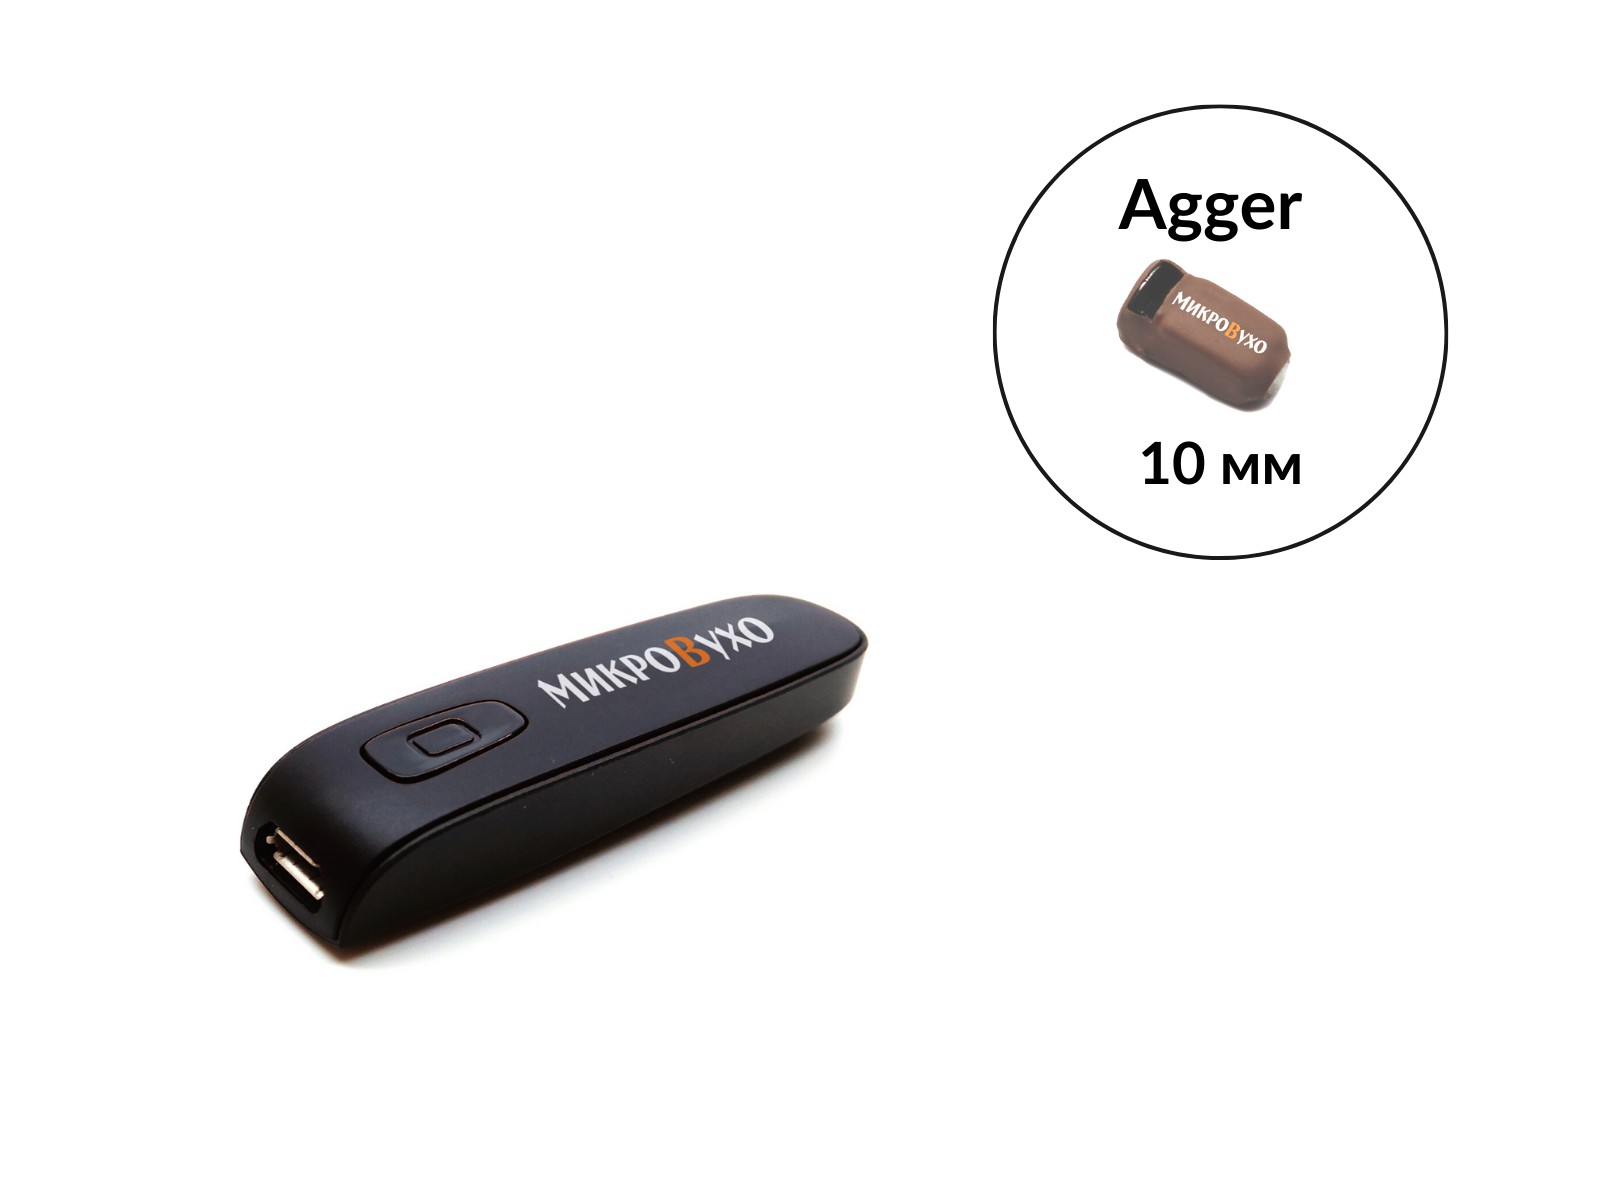 Гарнитура Bluetooth Box Basic с капсульным микронаушником Agger 10 мм - изображение